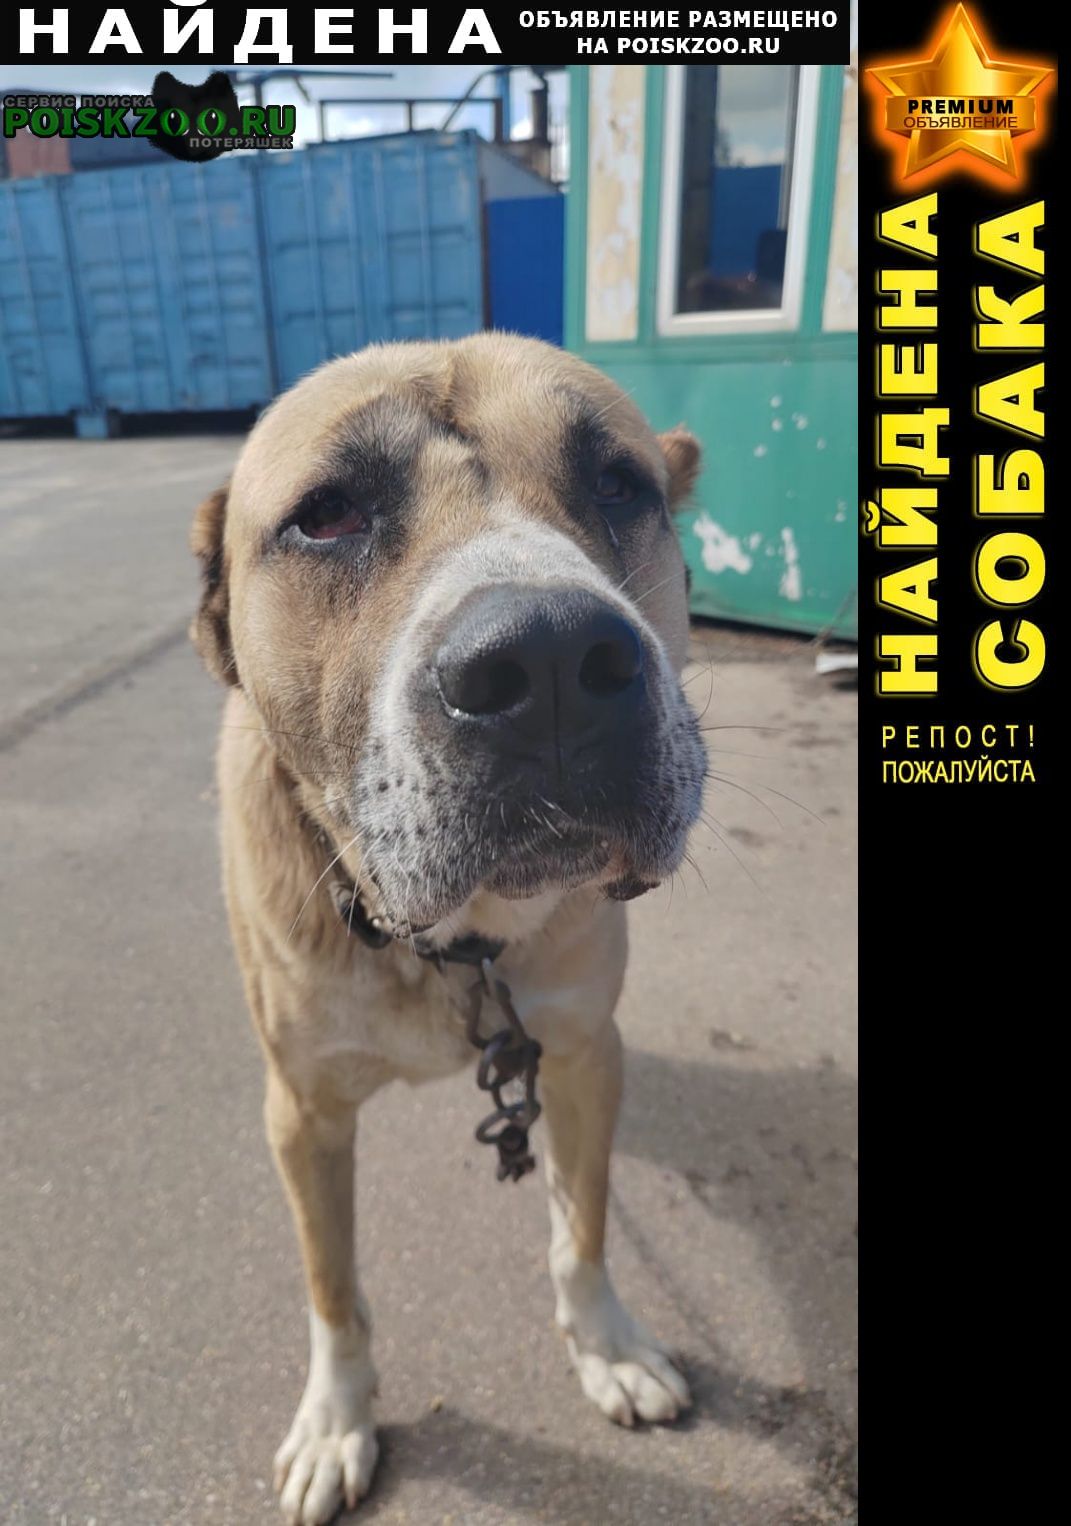 Найдена собака кобель видимо алабай на киевском шоссе ( возмош Обнинск